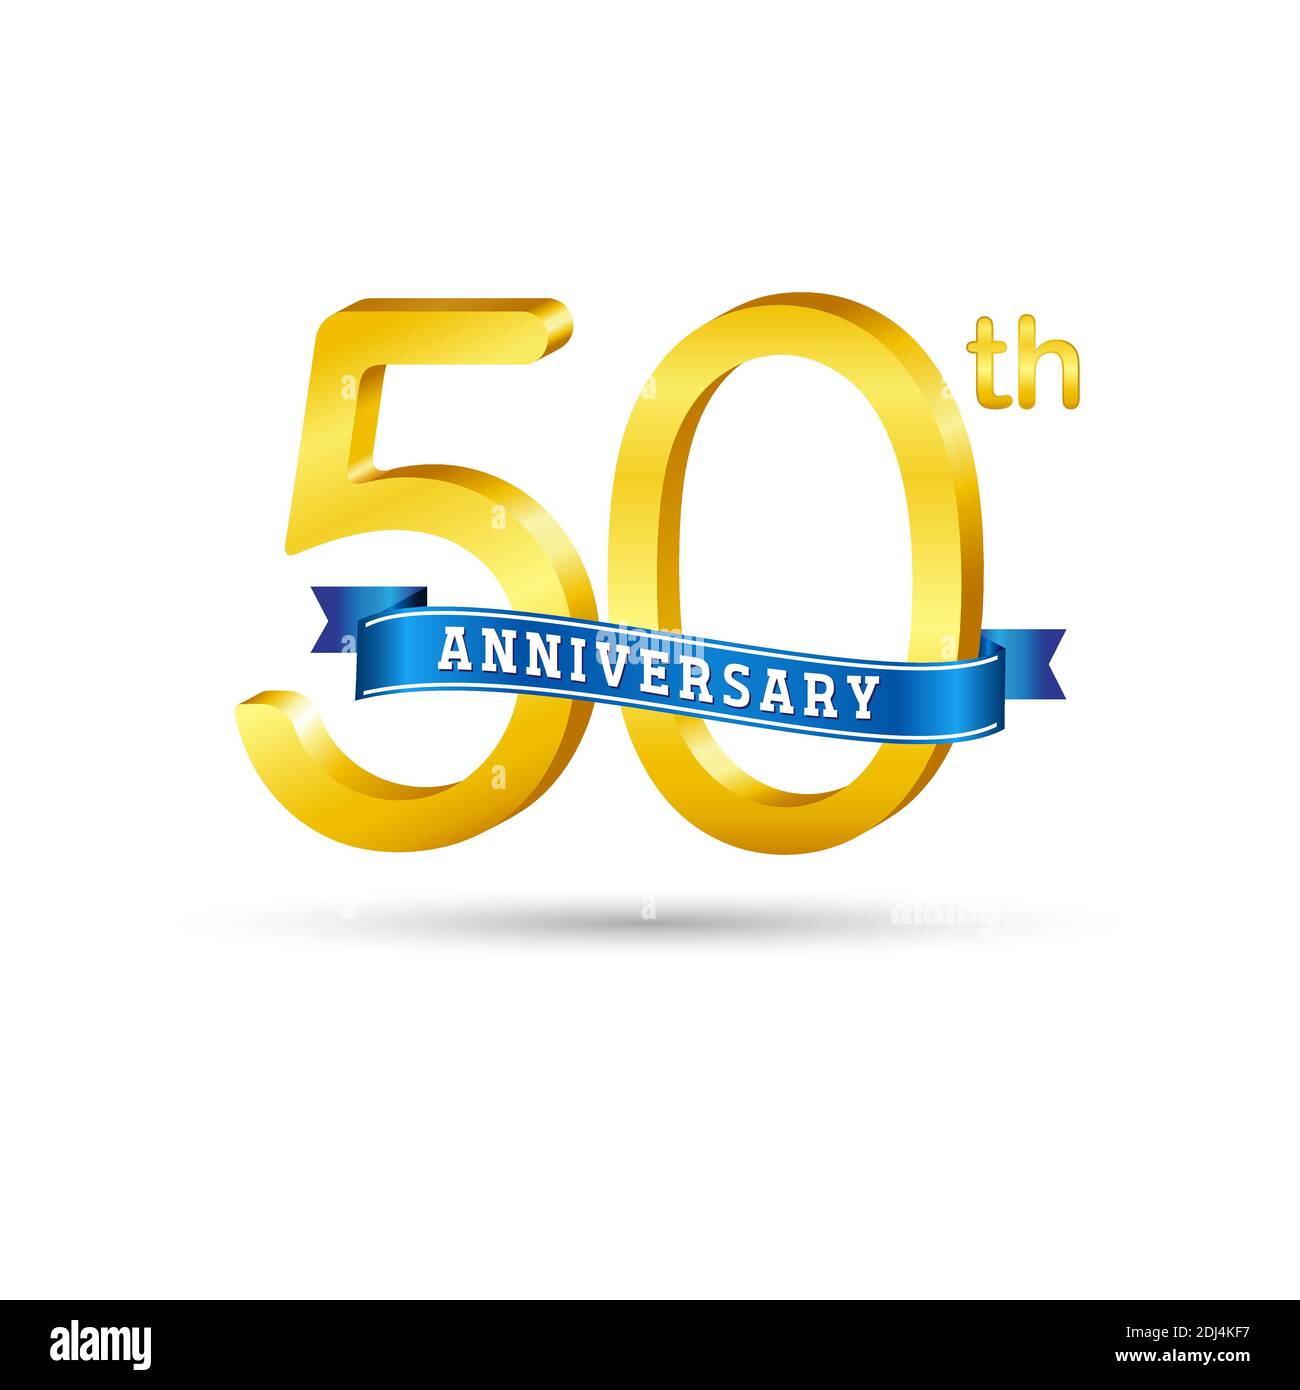 Logo kỉ niệm vàng 50 năm có nơ xanh được cách ly trên nền trắng là lựa chọn hoàn hảo cho những ai muốn sử dụng những hình ảnh đặc trưng và sang trọng. Logo nổi bật trong các thiết kế và sẽ làm cho sản phẩm của bạn trở nên đa dạng và phong phú hơn.